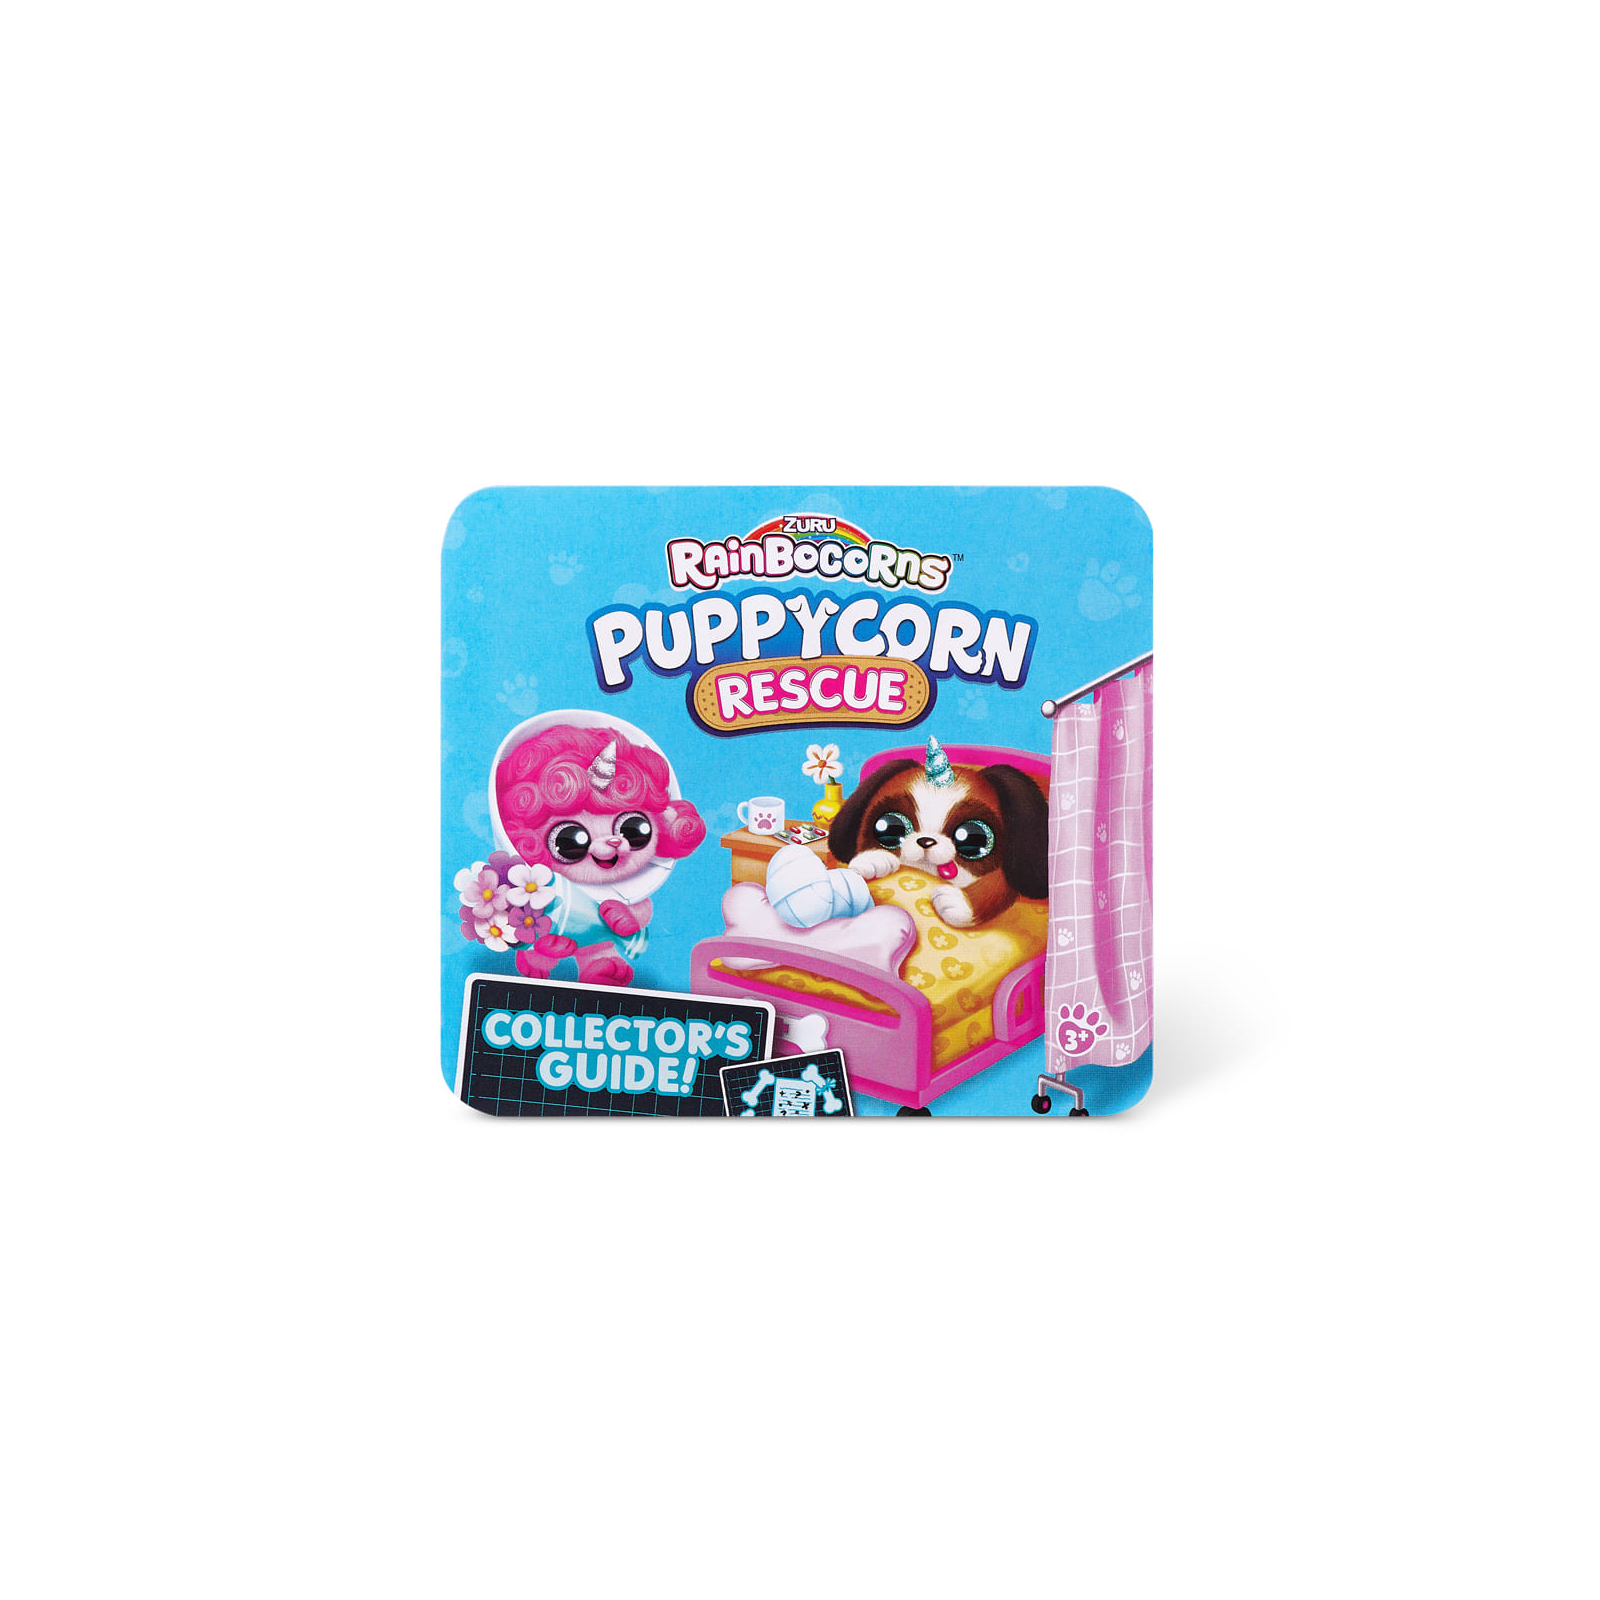 Мягкая игрушка Rainbocorns сюрприз A серия Puppycorn Rescue (9261A) изображение 13